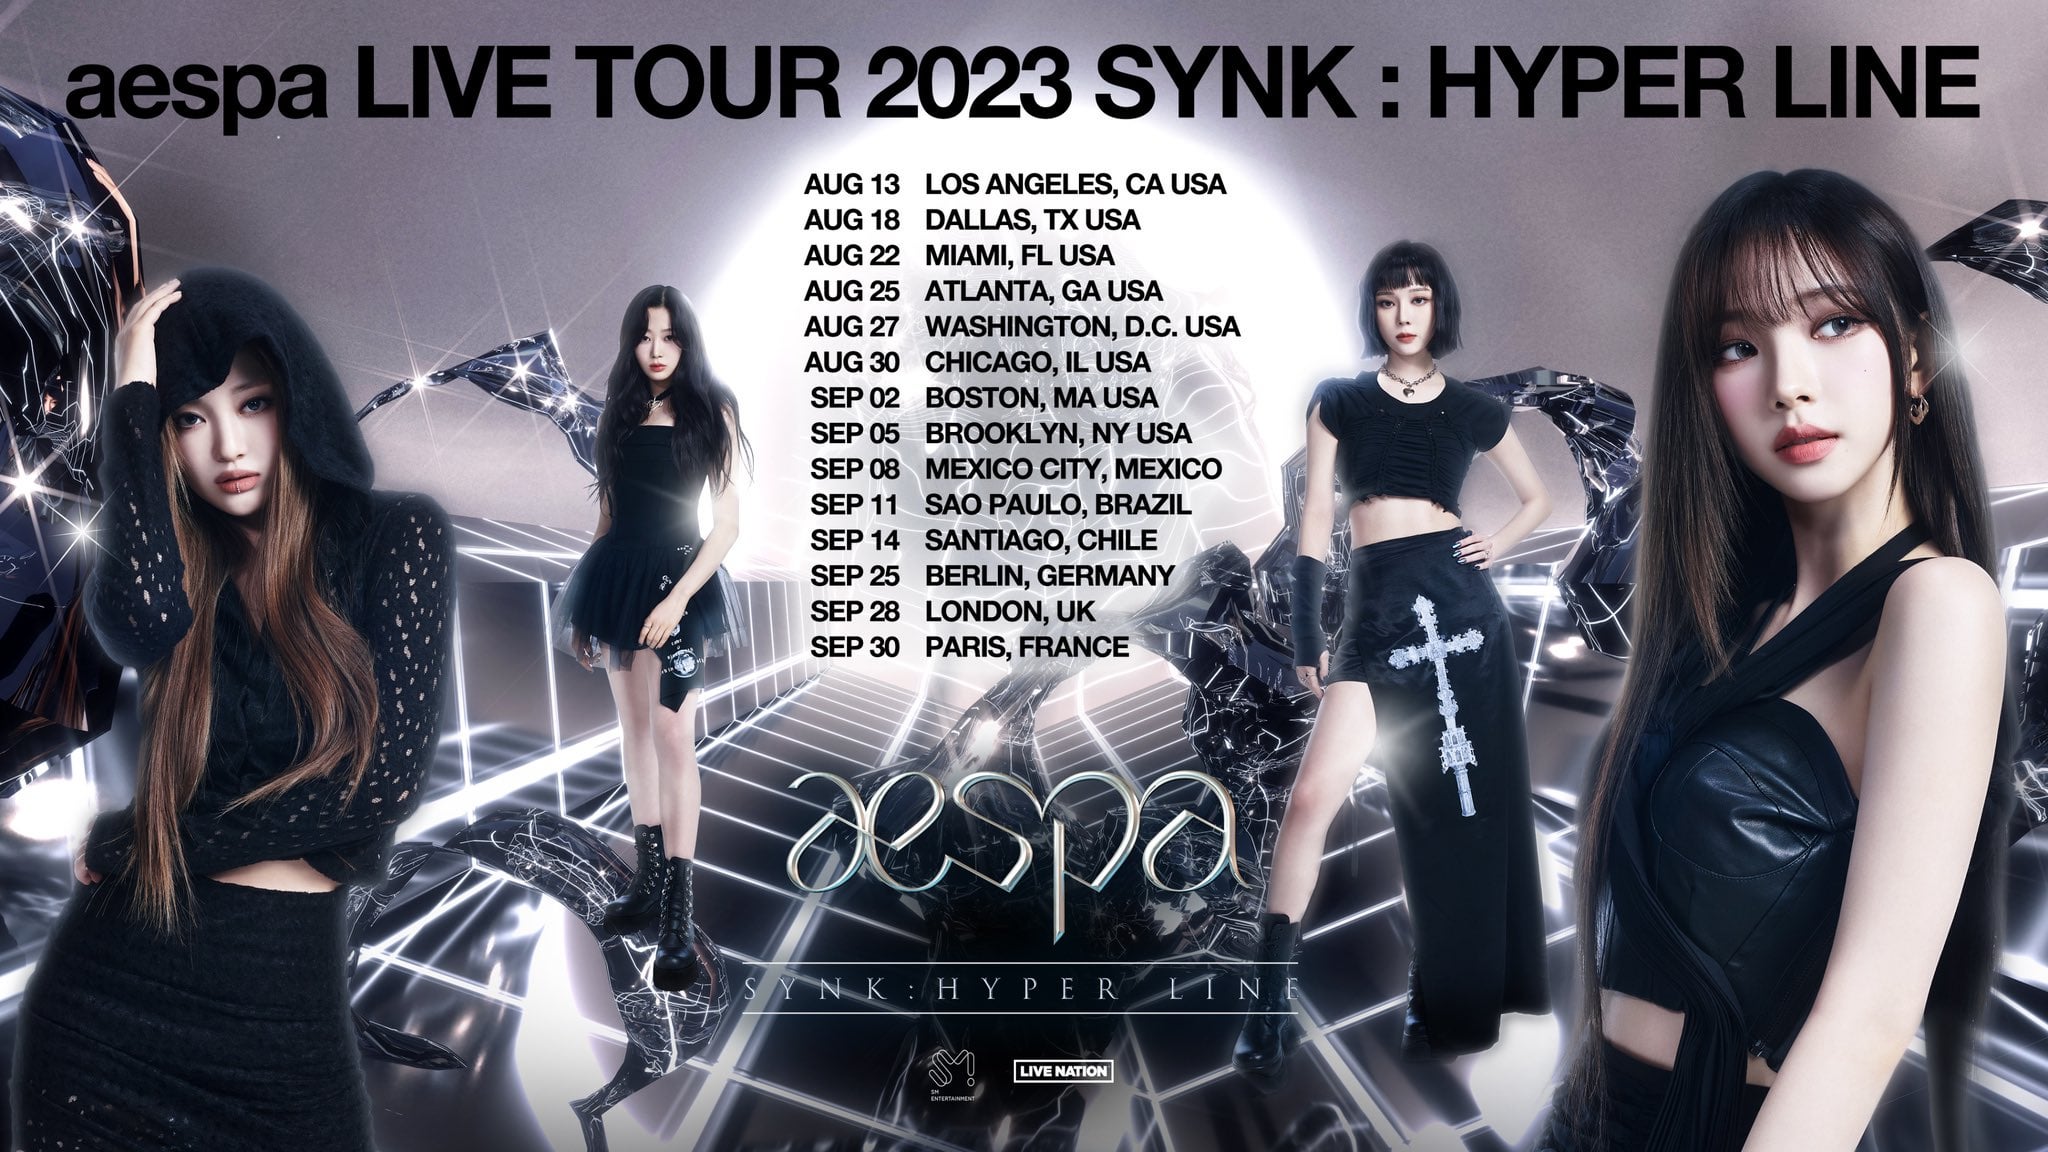 230519 aespa LIVE TOUR 2023 ‘SYNK : HYPER LINE’ Tour Announcement